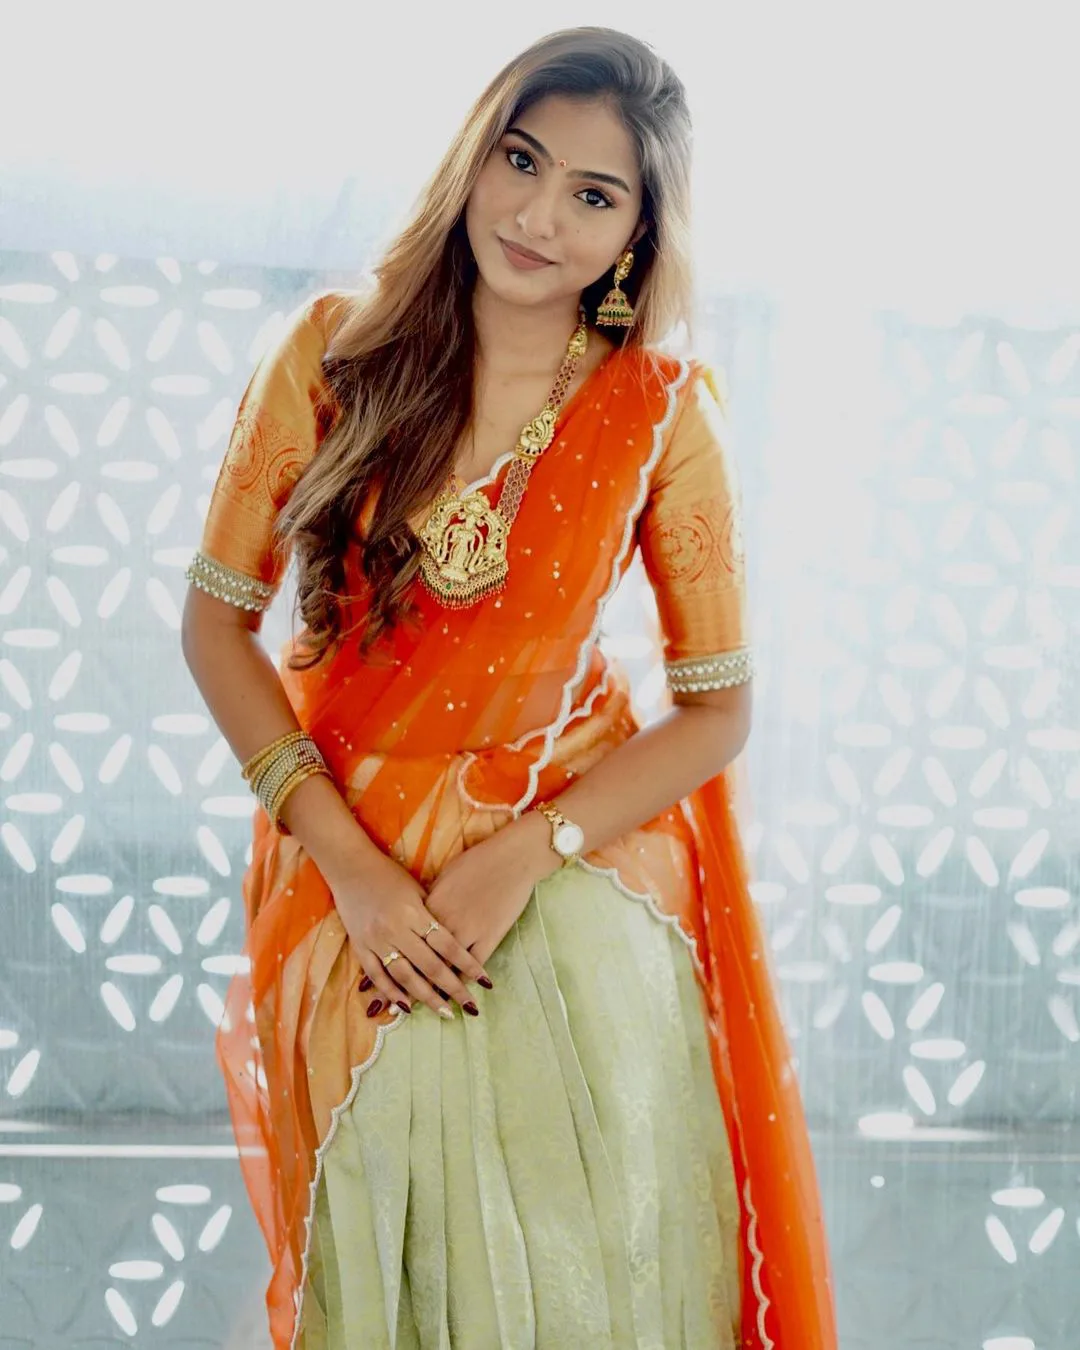 Pranavi Manukonda gorgeous looks in half saree pic1